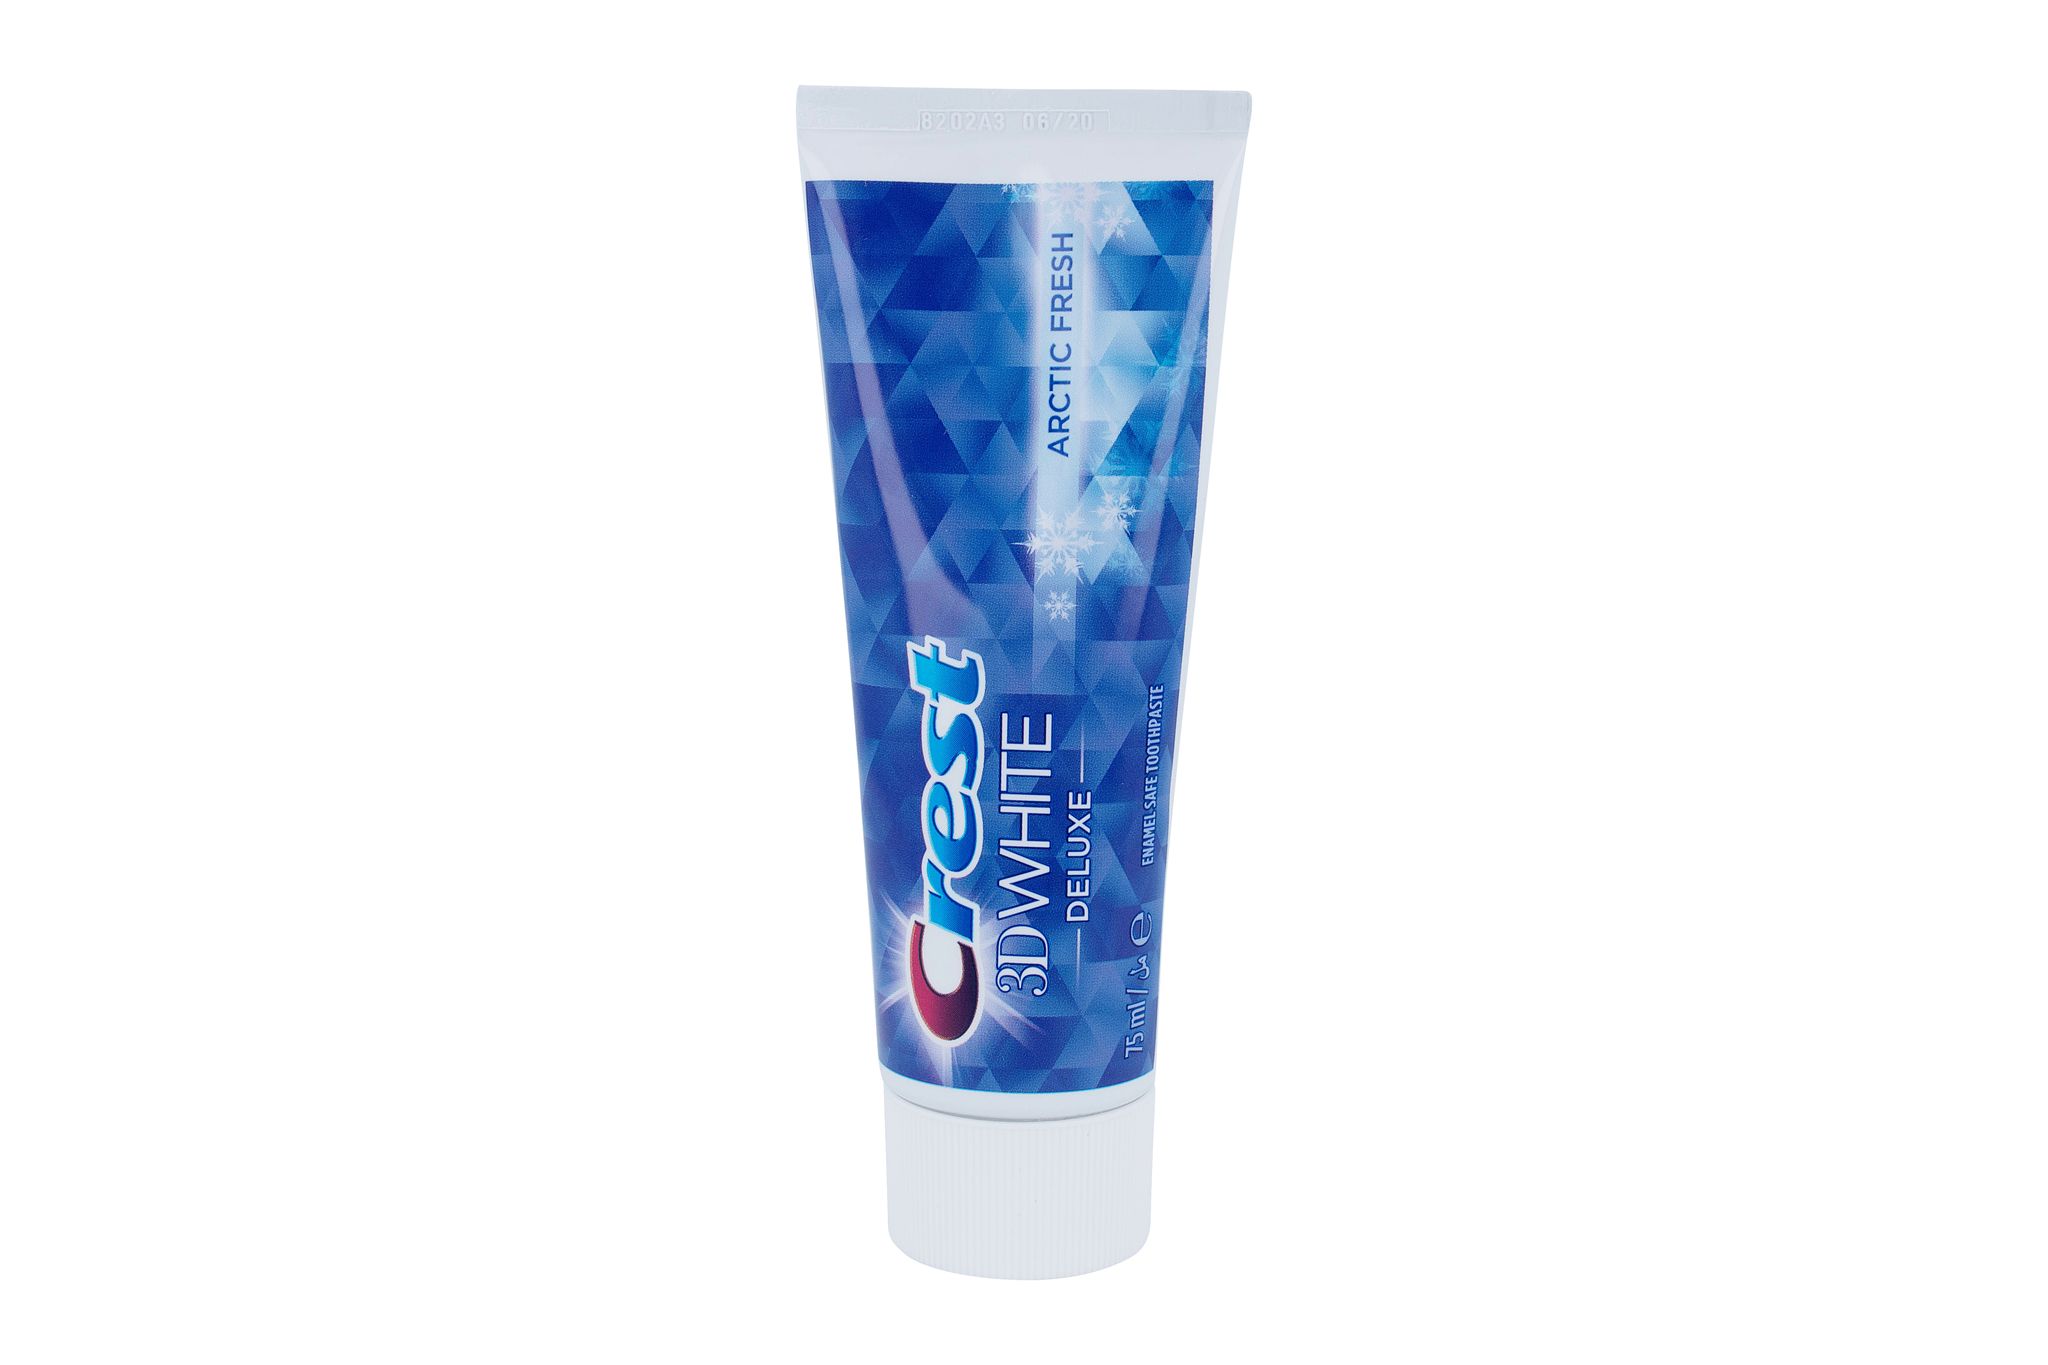 3D White Arctic Fresh Toothpaste, 2 X 75Ml